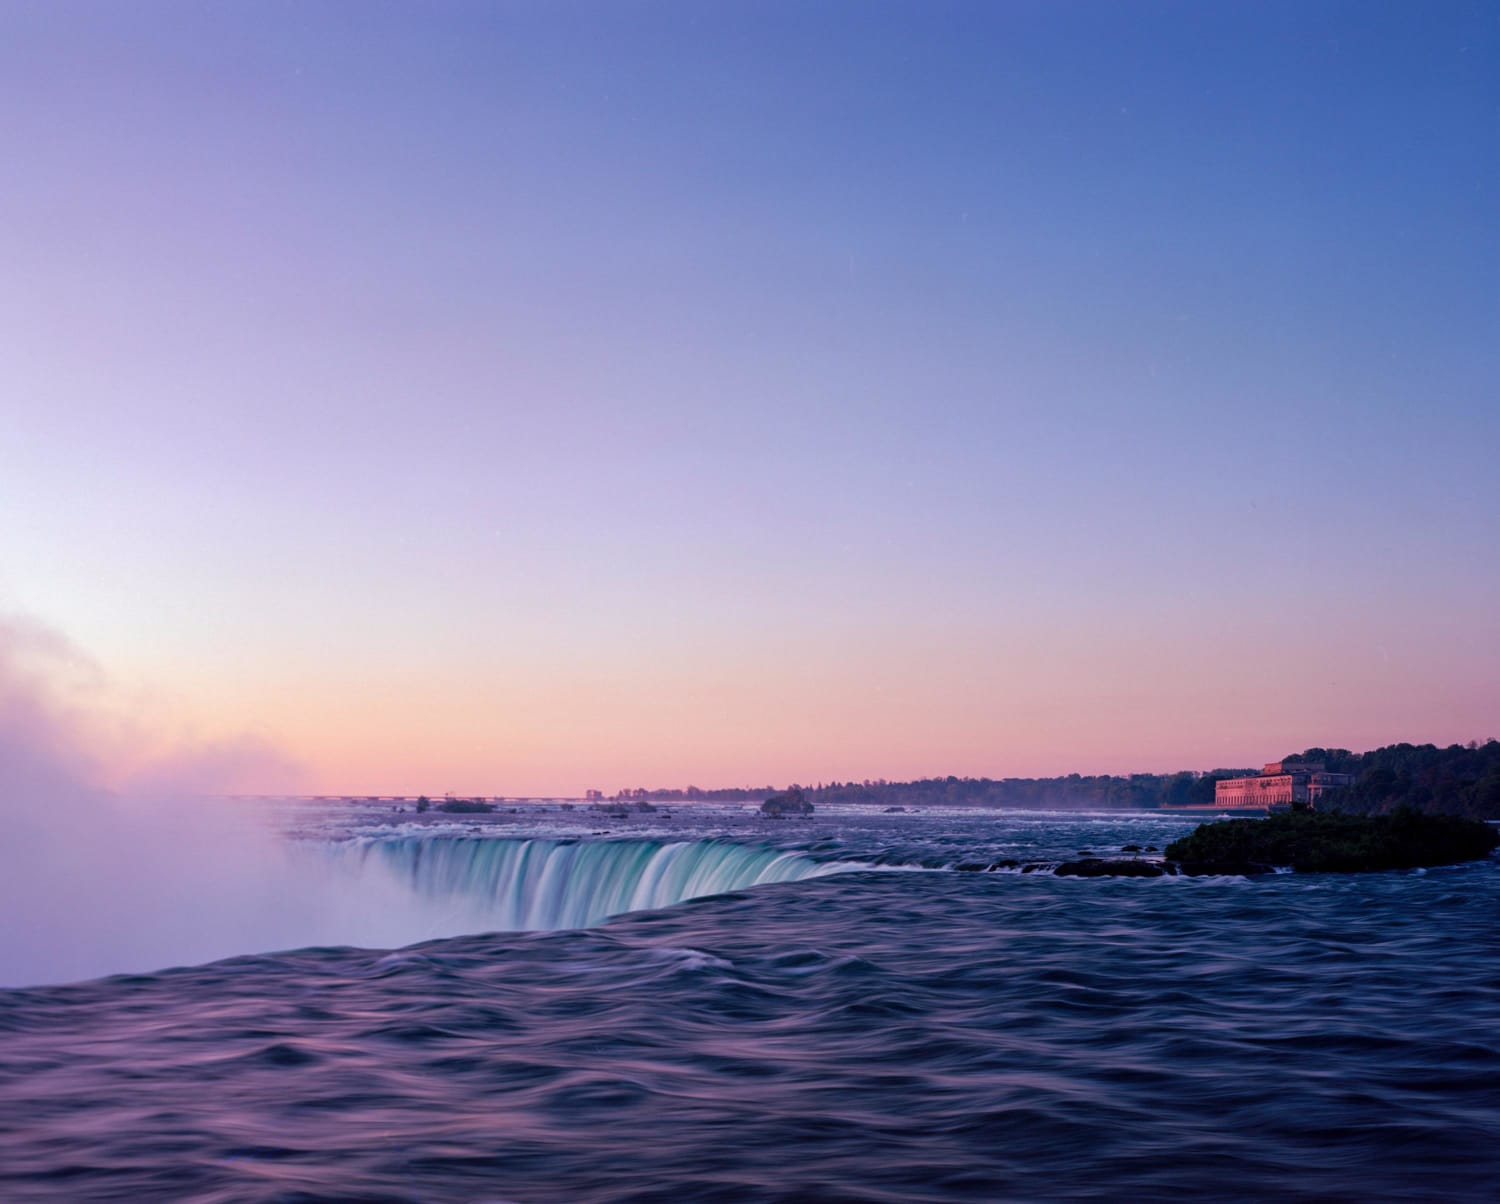 Niagara Falls at Sunrise // Ektar 100/ f32 / Nikkor 90mm / Chamonix 45N2